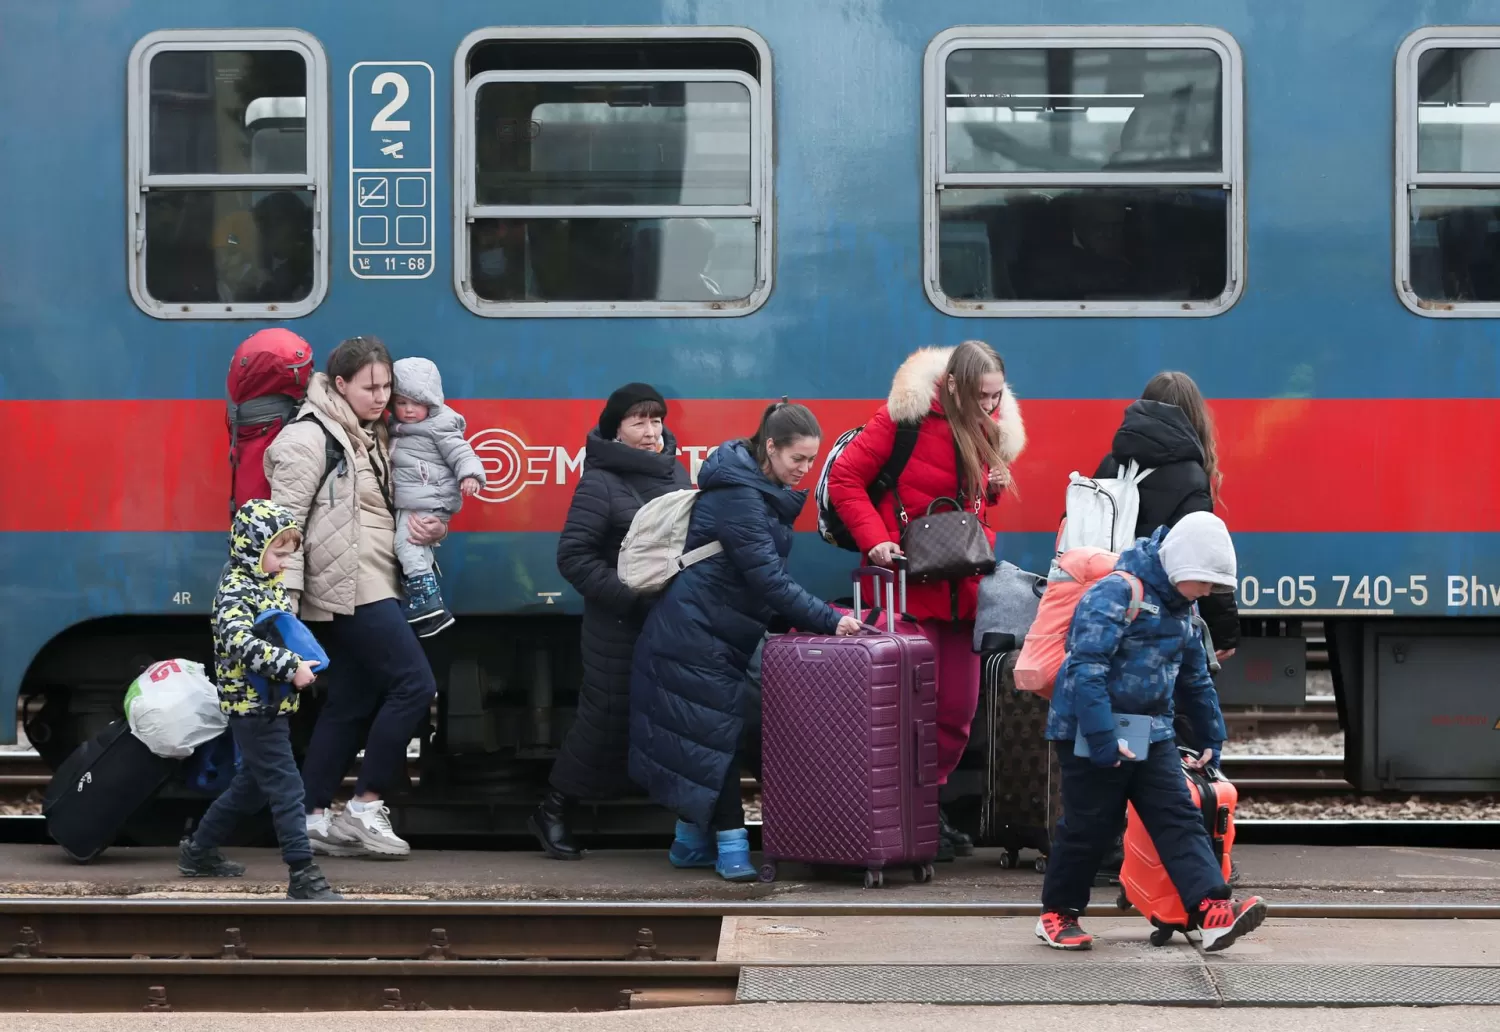 EN HUNGRÍA. Refugiados ucranianos desembarcan en una estación de tren, huyendo de los bombardeos rusos. Foto: Reuters